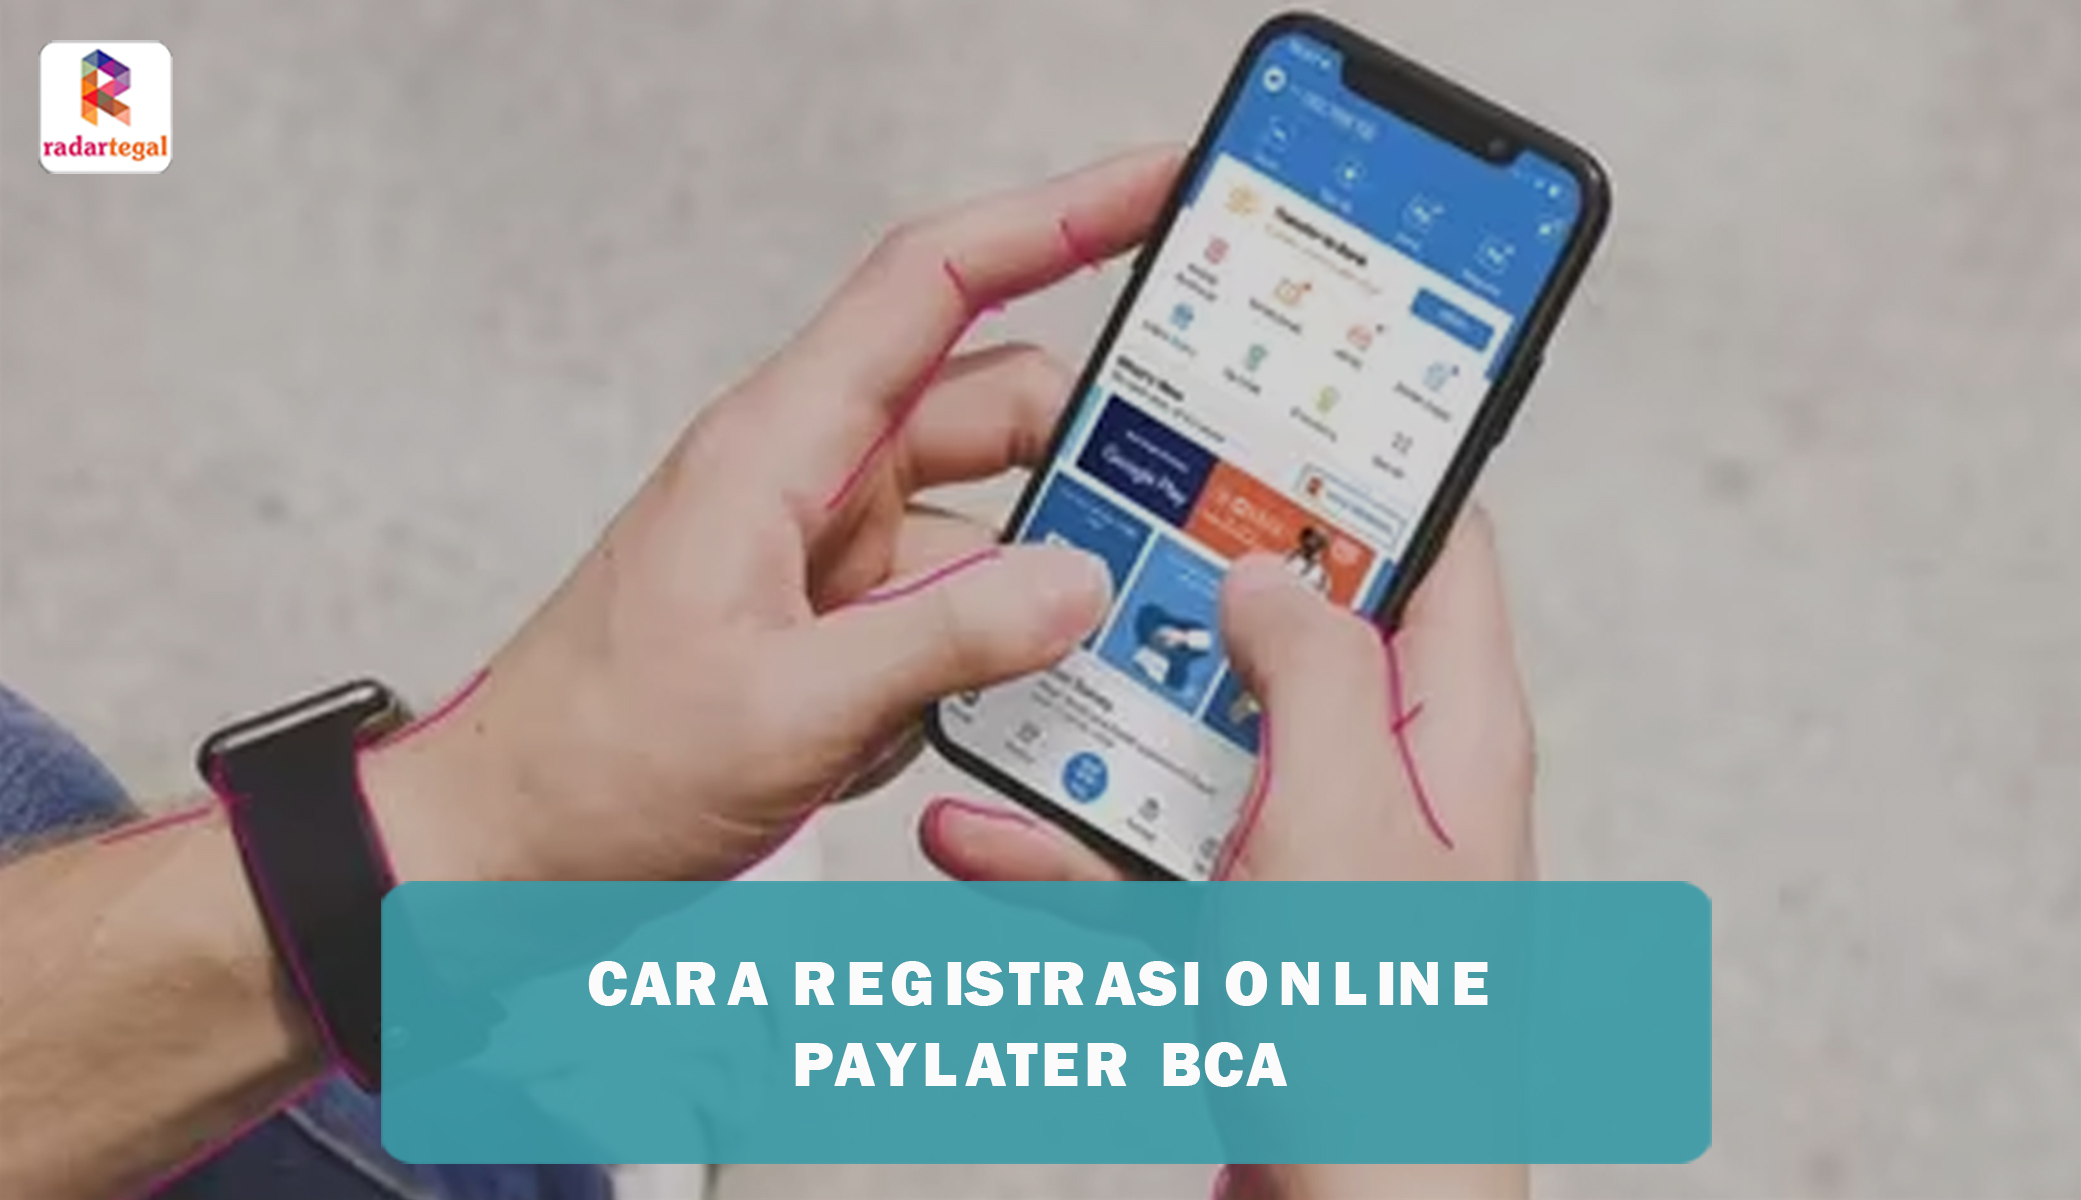 Cara Registrasi Online Paylater BCA dengan Mudah dan Praktis, Dapatkan Limit Hingga Rp20 Juta